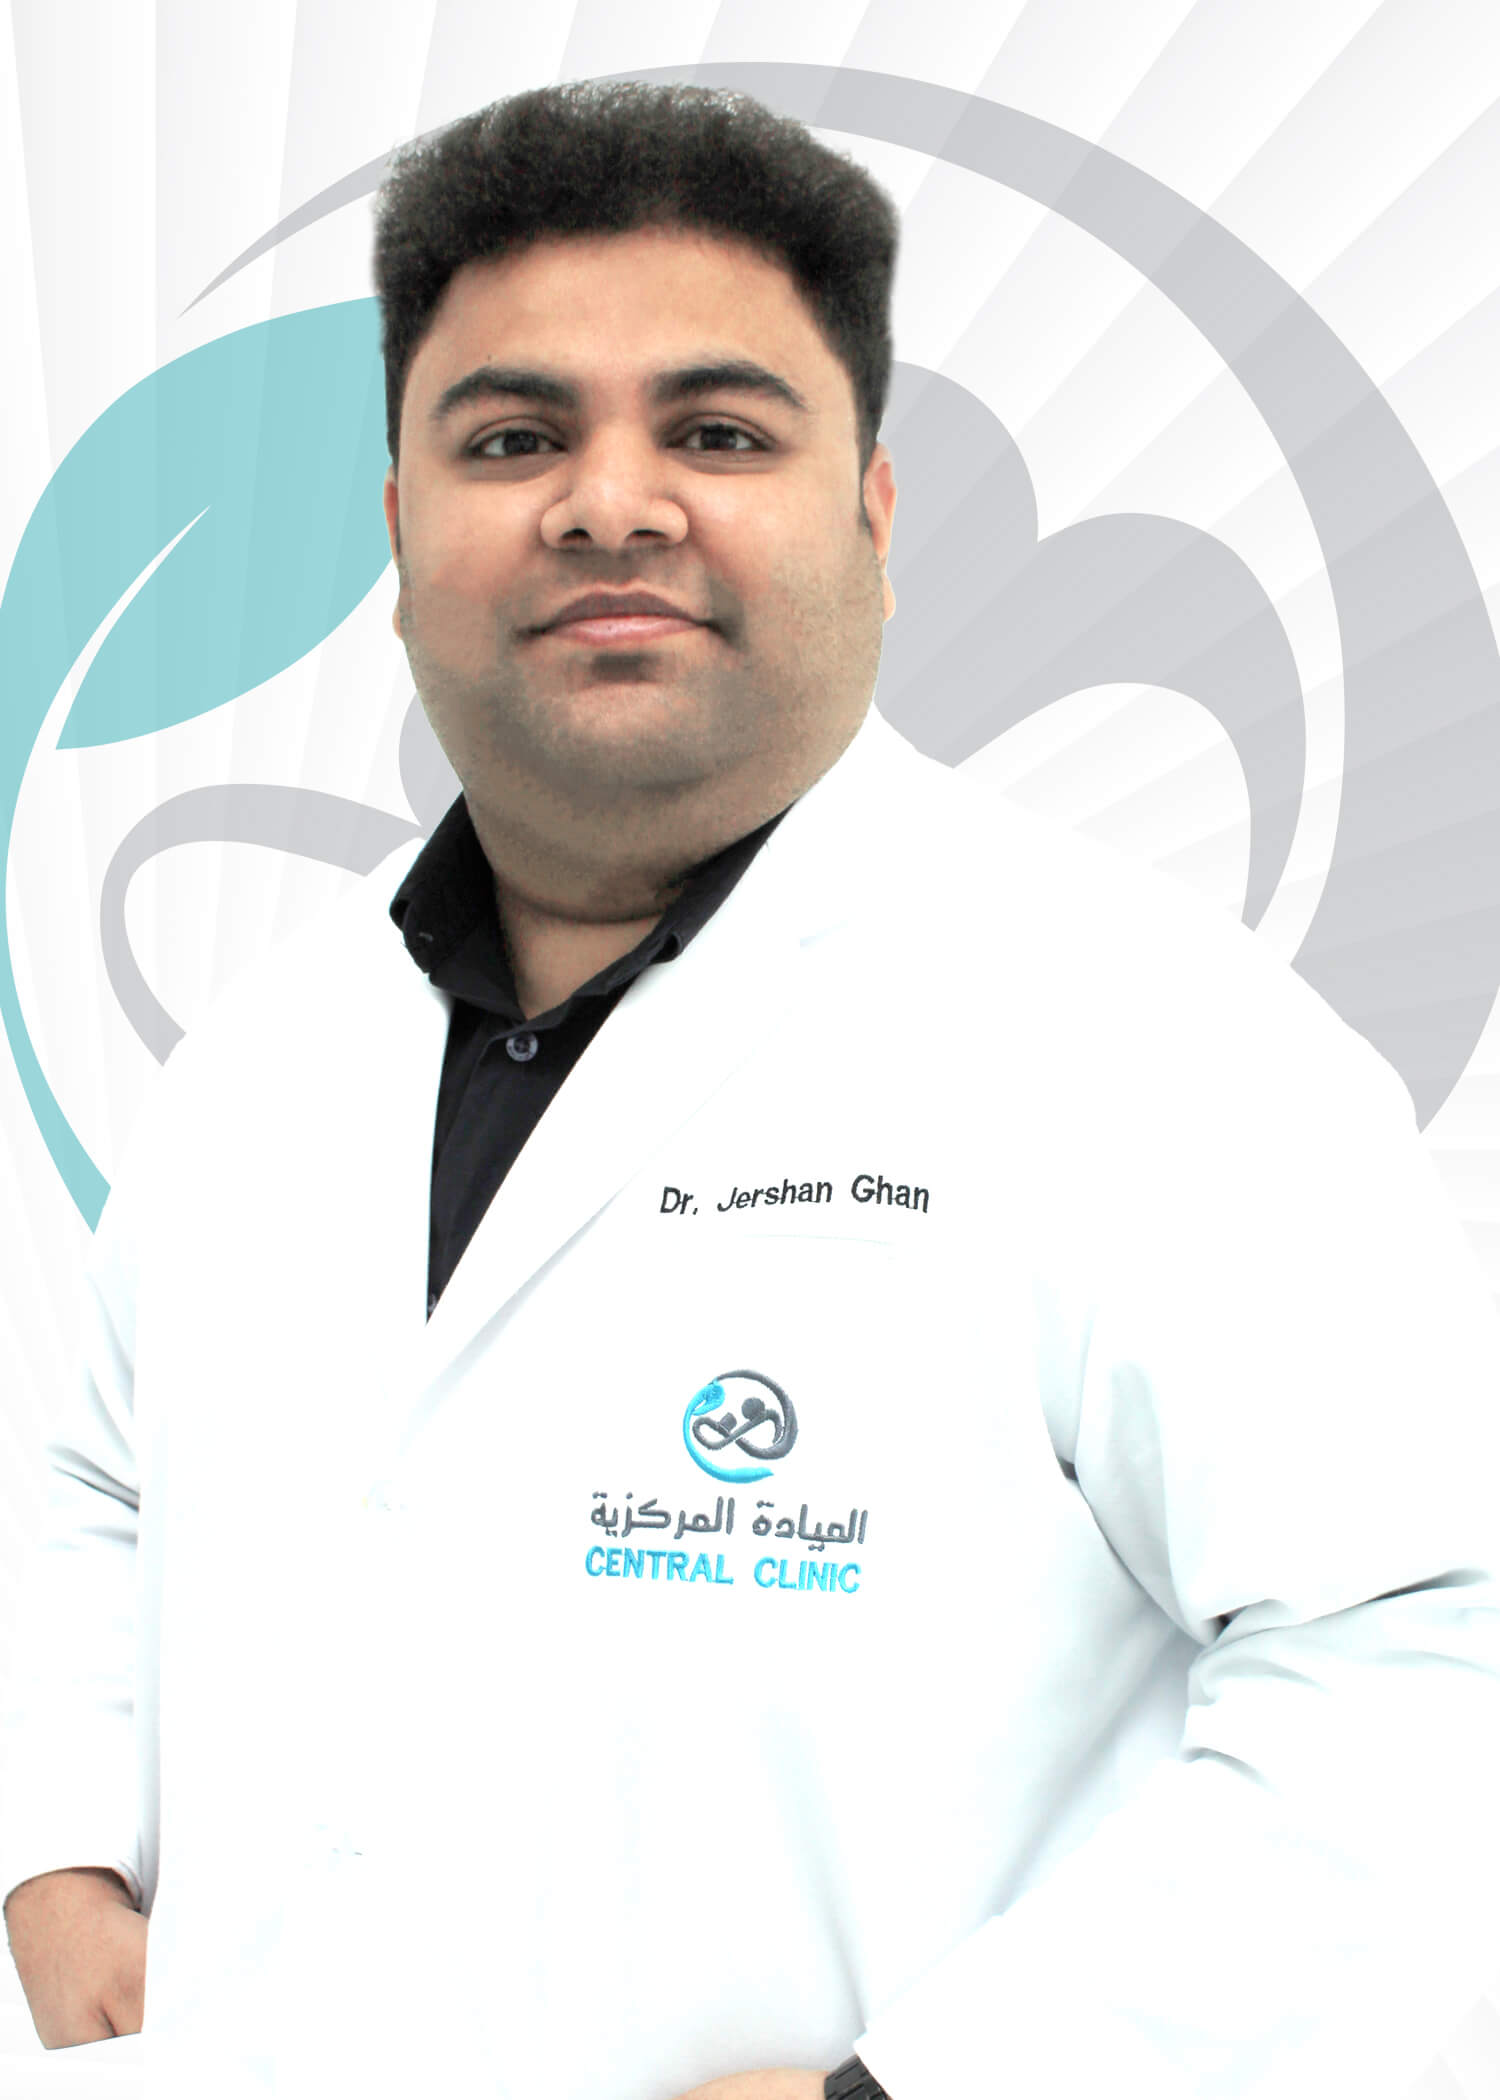 Dr. Jershan Ghan